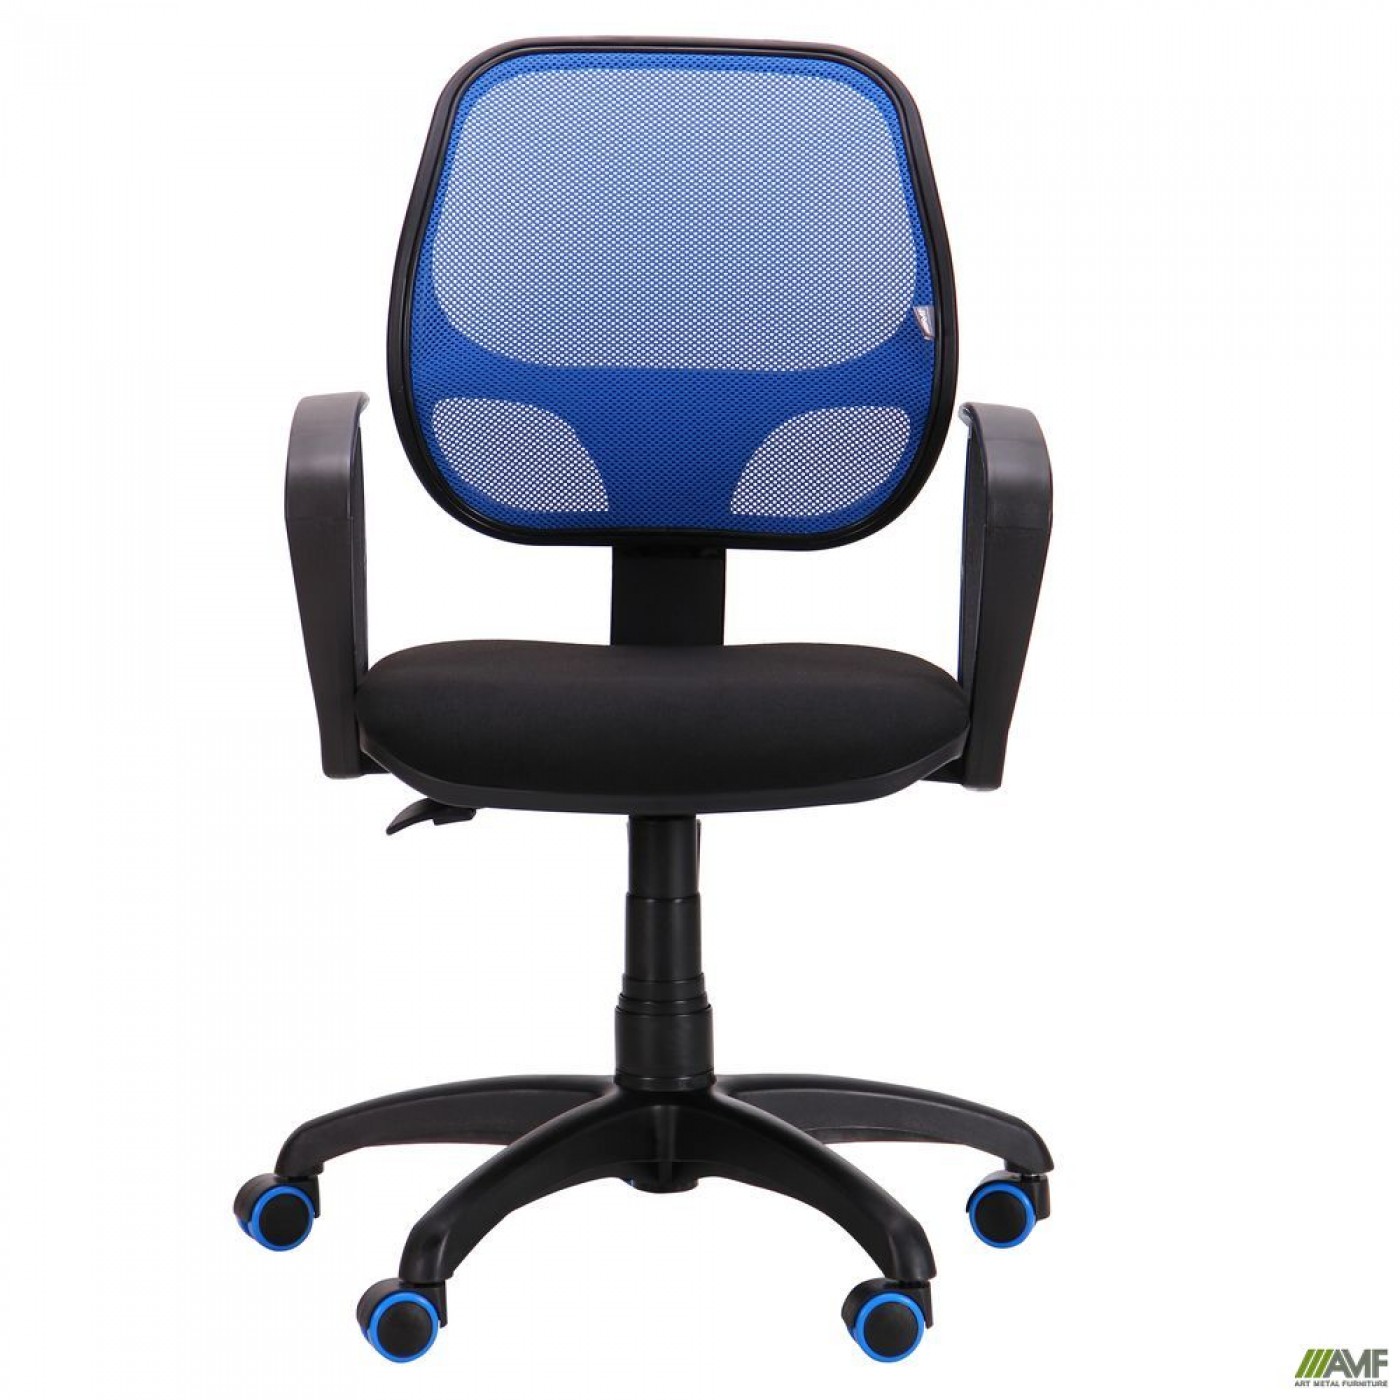 Кресло Бит Color/АМФ-7 сиденье А-1/спинка Сетка синяя